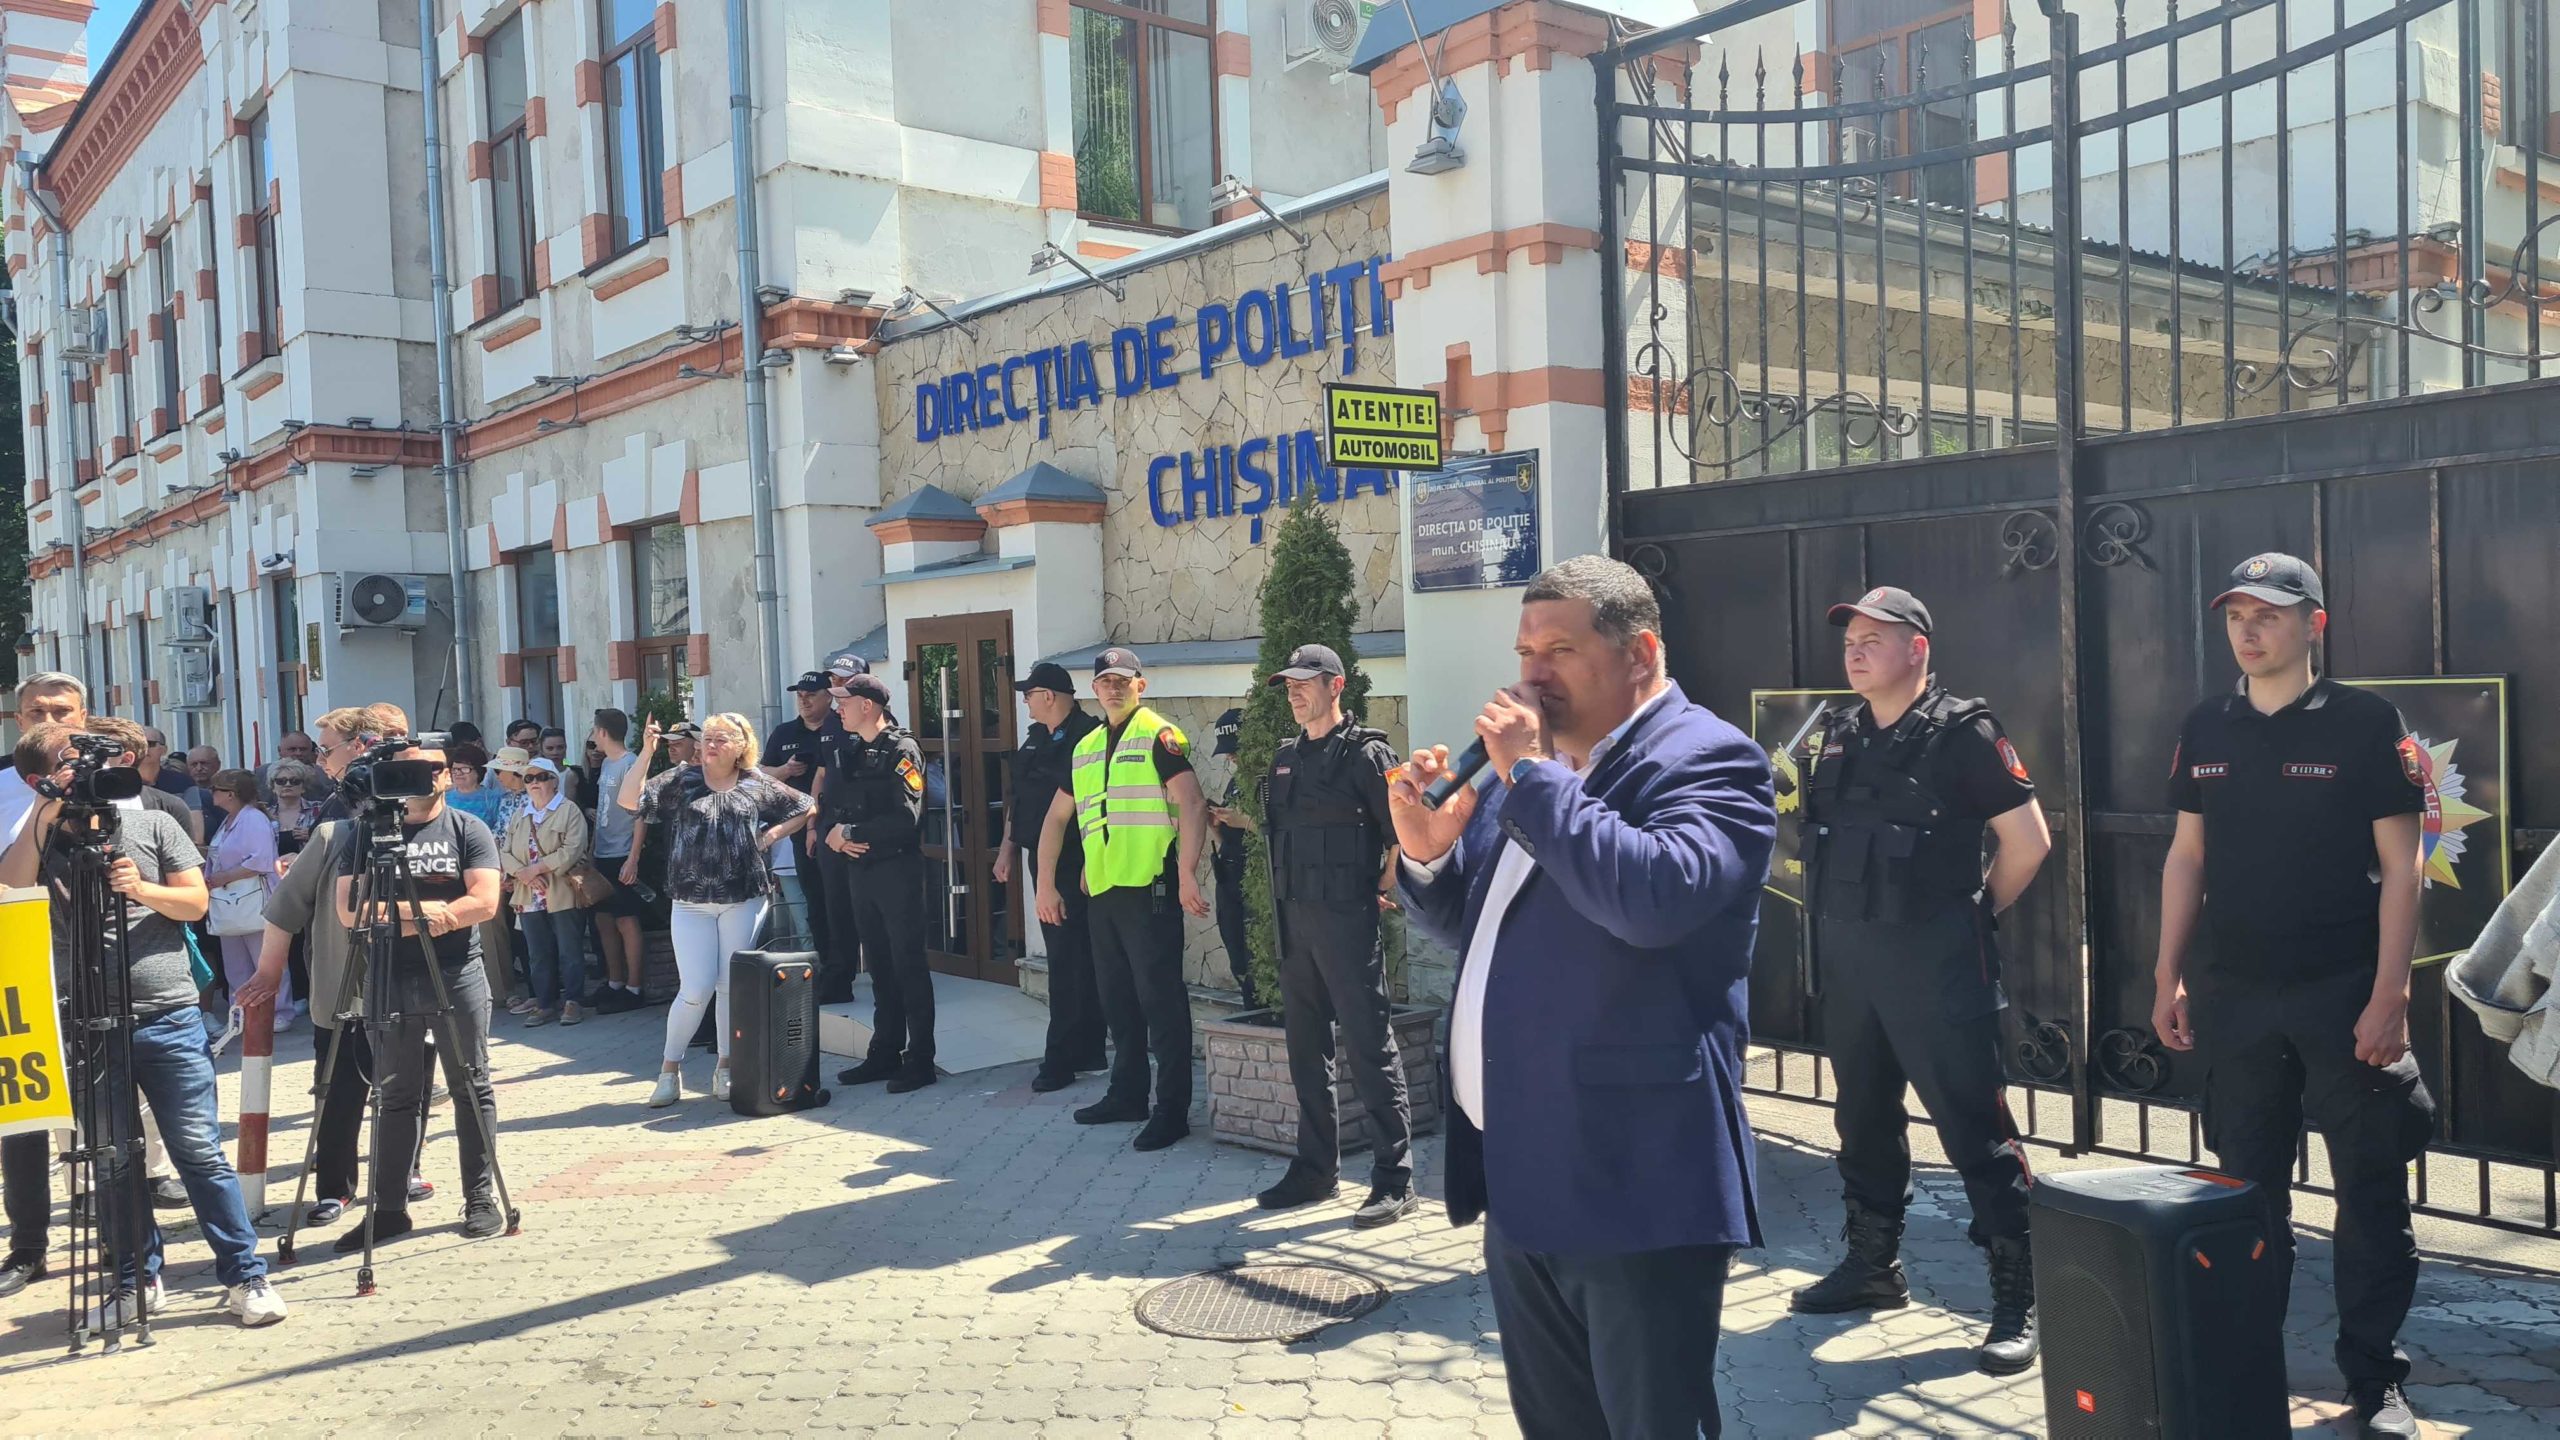 (LIVE) Социалисты протестуют у изолятора, где содержат Игоря Додона